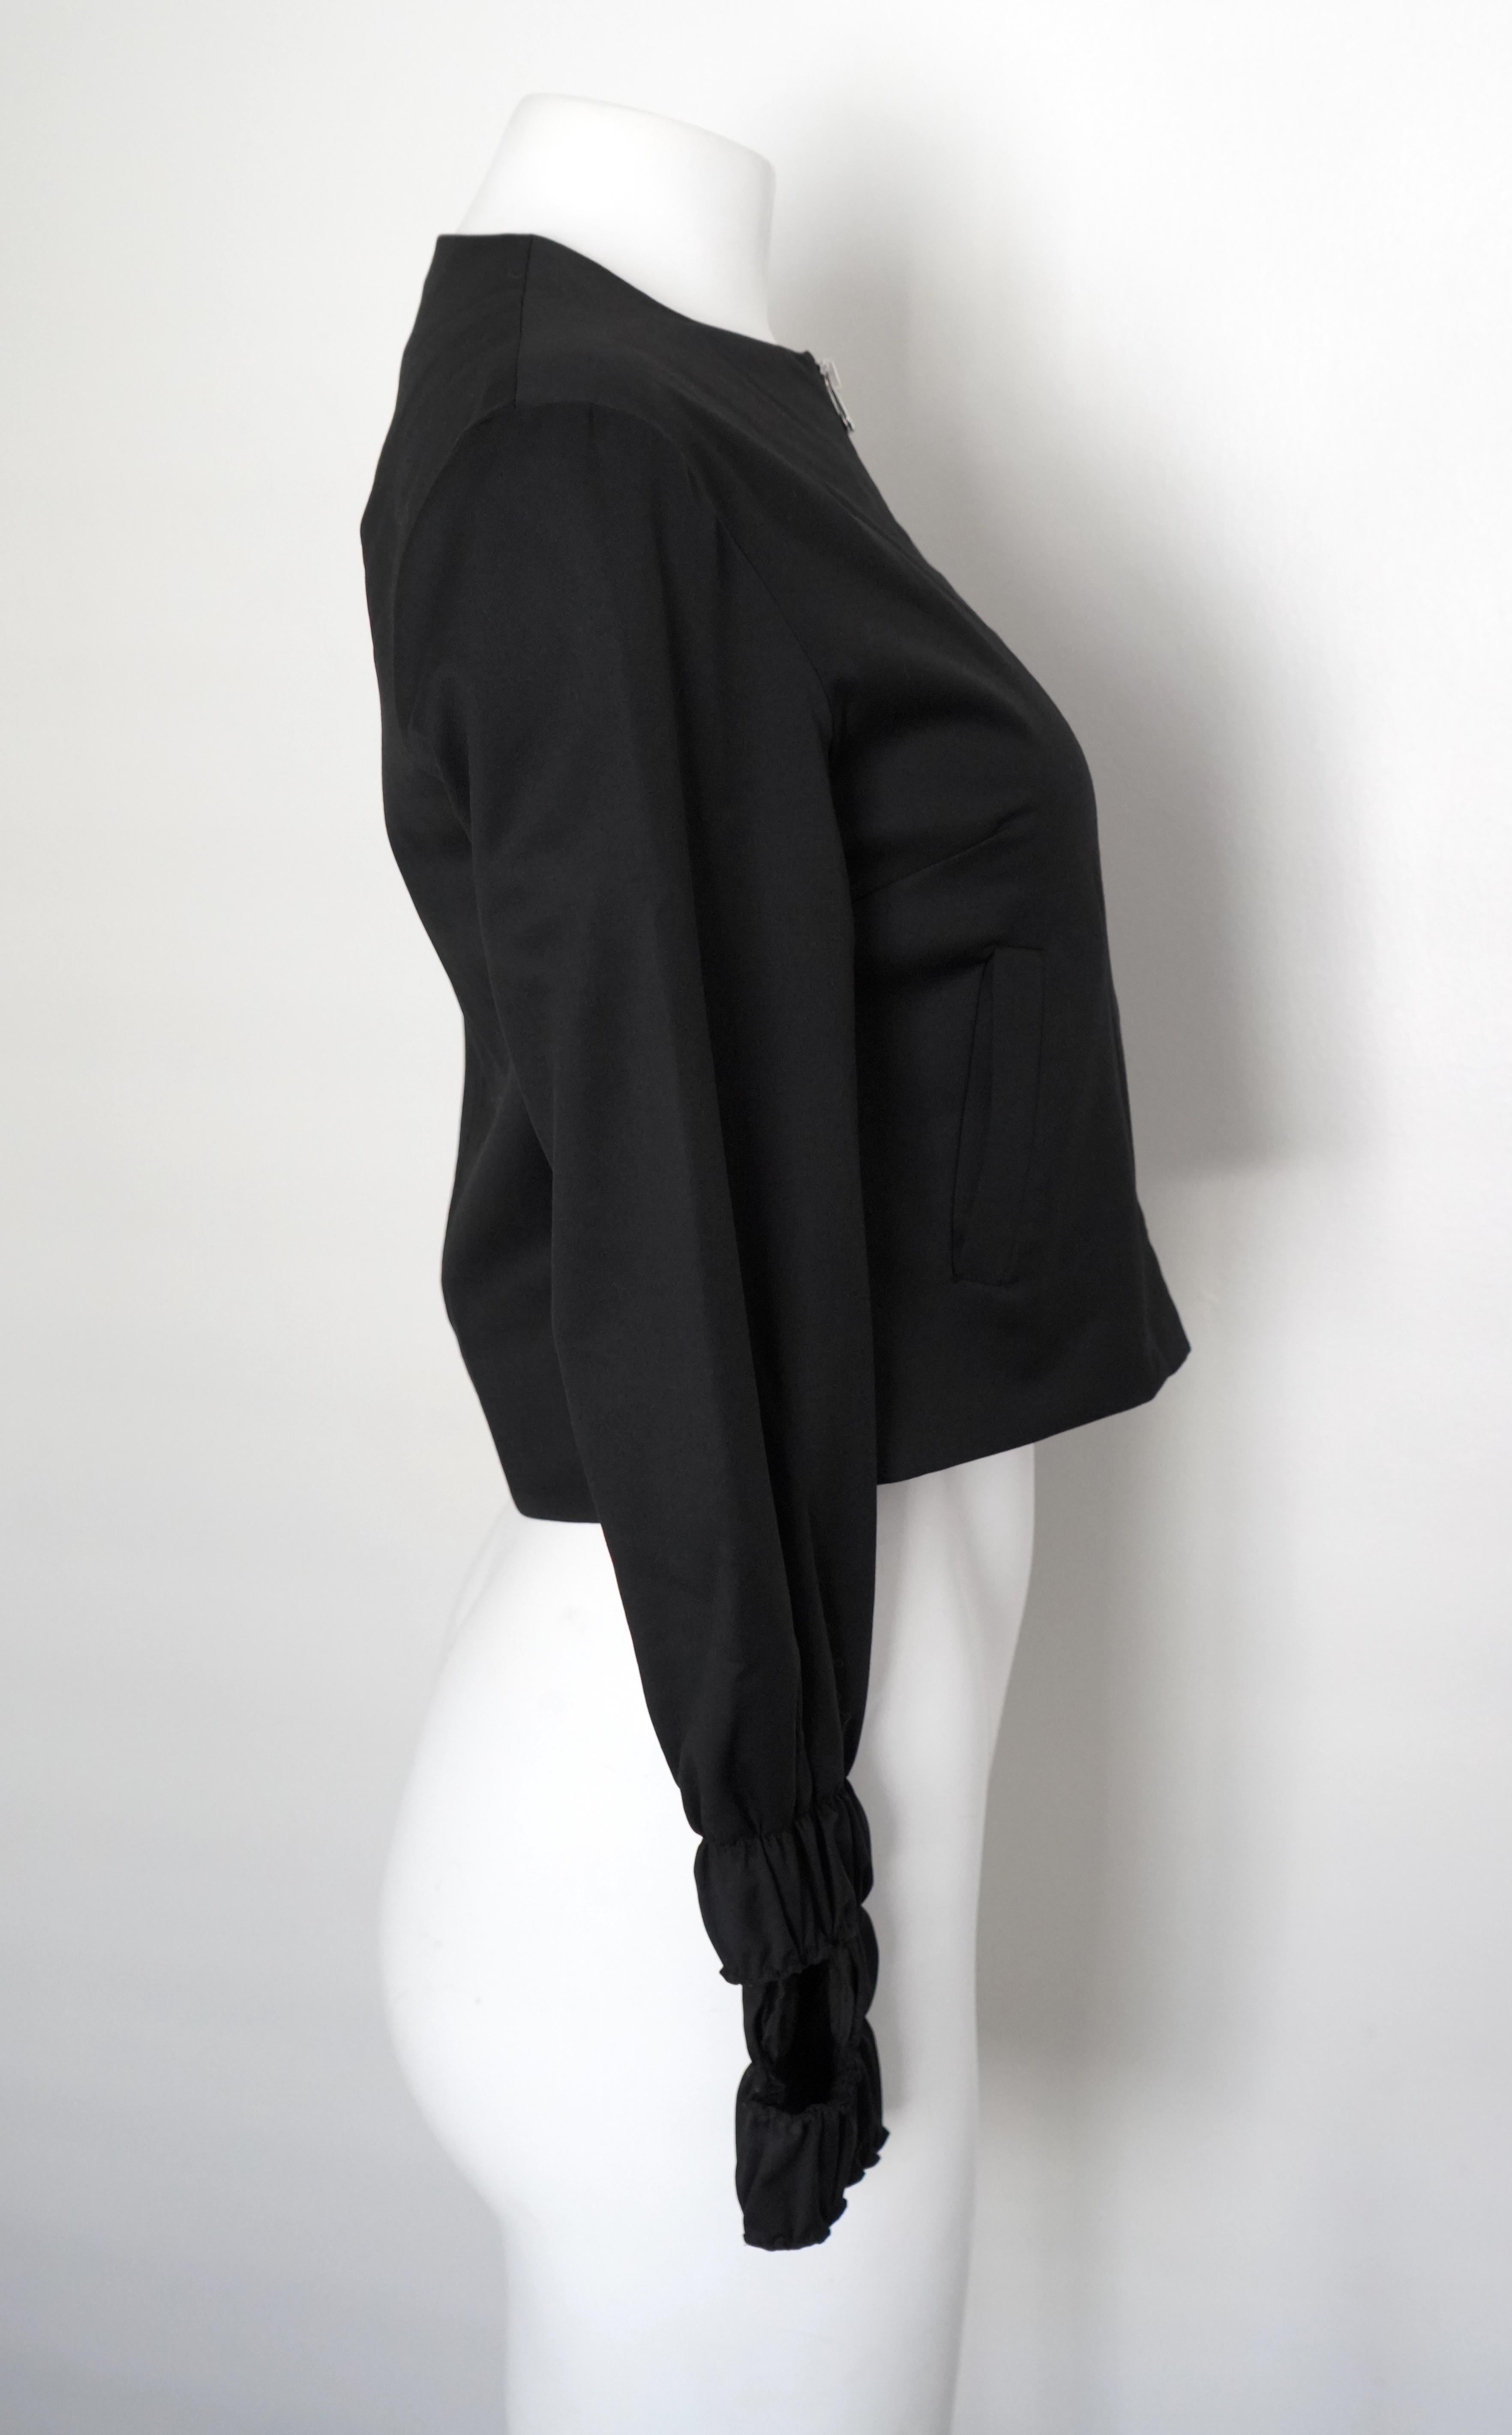 Cette veste boléro zippée en laine noire de J. W. Anderson en taille X-small (UK 6, US 2, Eur 34) allie un design à la pointe de la mode à des éléments fonctionnels. De coupe courte, la veste présente des manches plissées au poignet, avec des trous